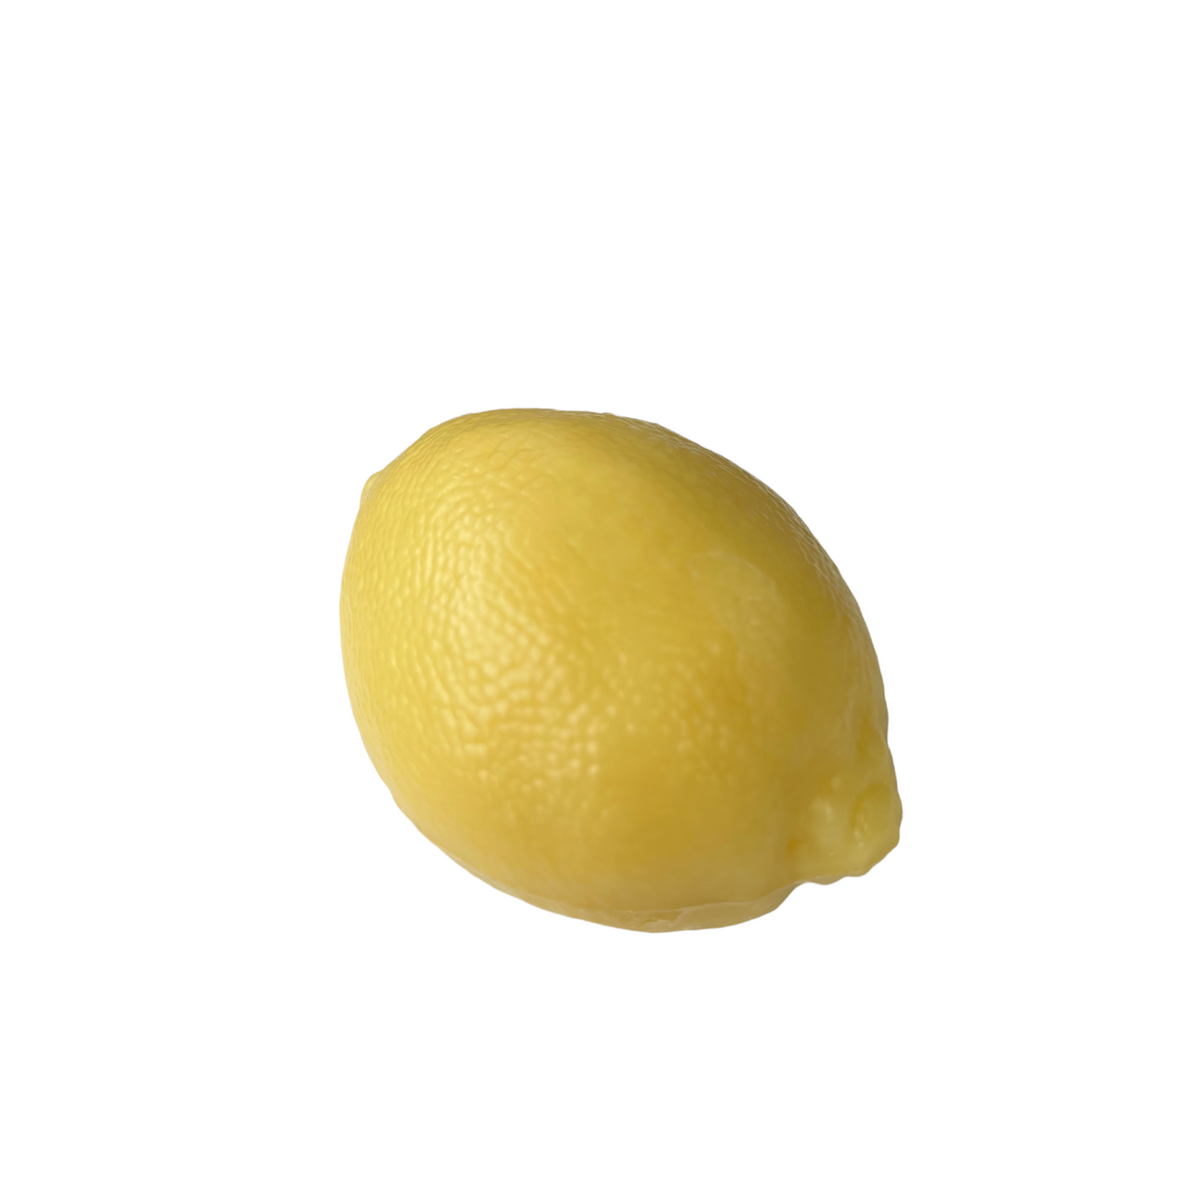 125G Savon De Marseille Lemon / Citron Shape French Soap